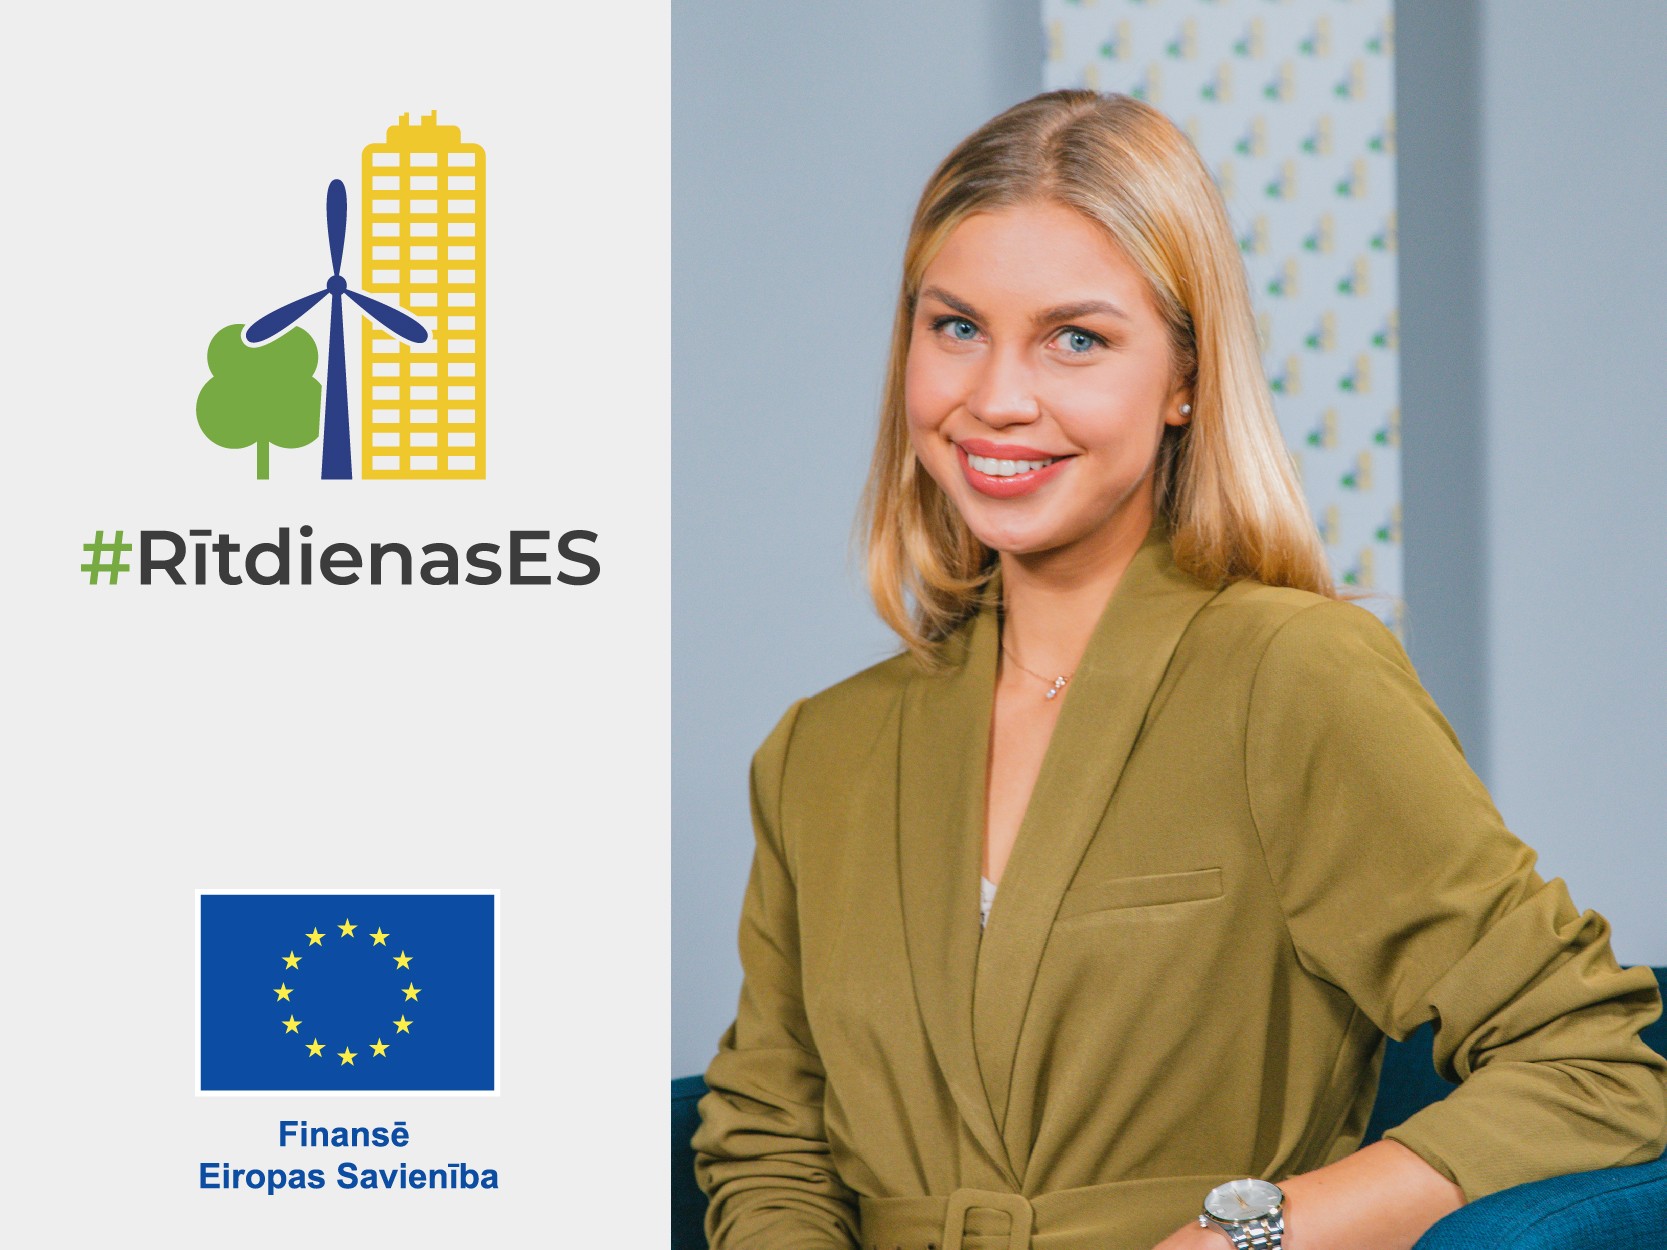 Rītdienas ES | Patrīcija Anna Vavilova | Kā apvienot videi draudzīgus un digitālus risinājumus?